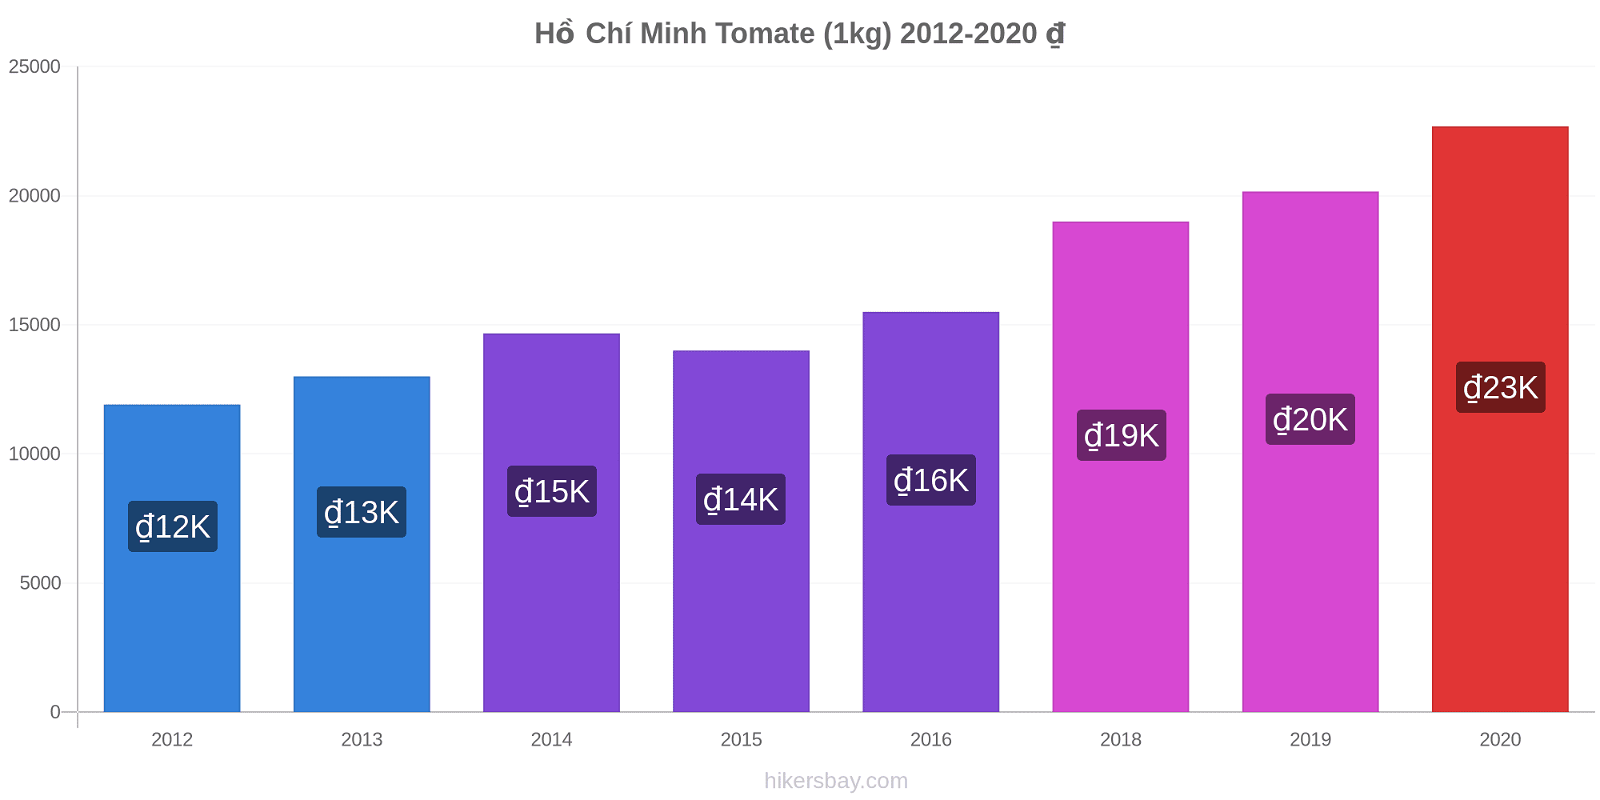 Hồ Chí Minh cambios de precios Tomate (1kg) hikersbay.com